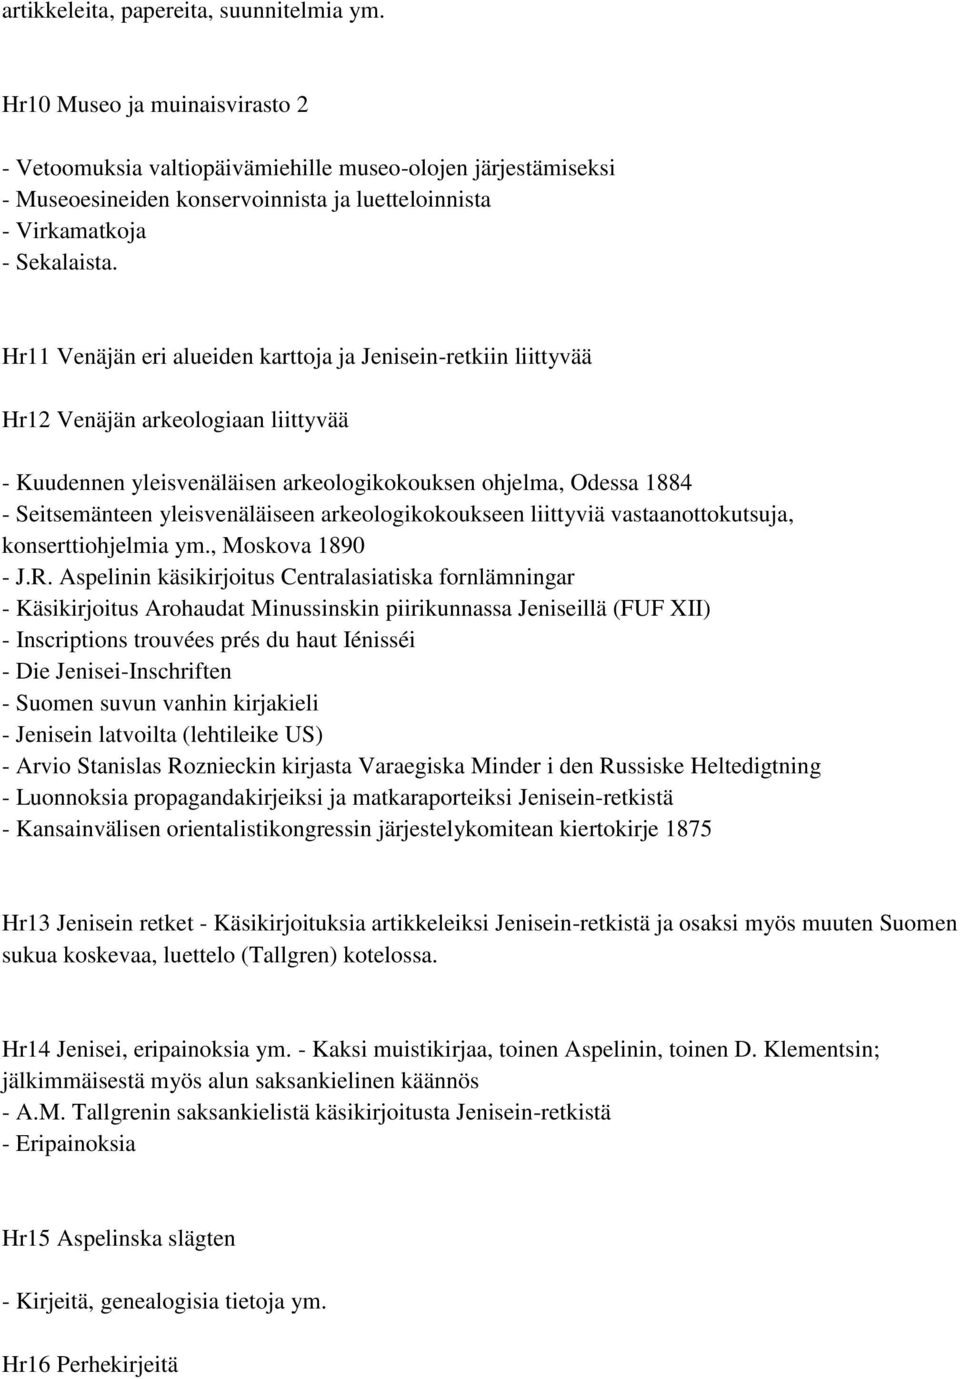 Hr11 Venäjän eri alueiden karttoja ja Jenisein-retkiin liittyvää Hr12 Venäjän arkeologiaan liittyvää - Kuudennen yleisvenäläisen arkeologikokouksen ohjelma, Odessa 1884 - Seitsemänteen